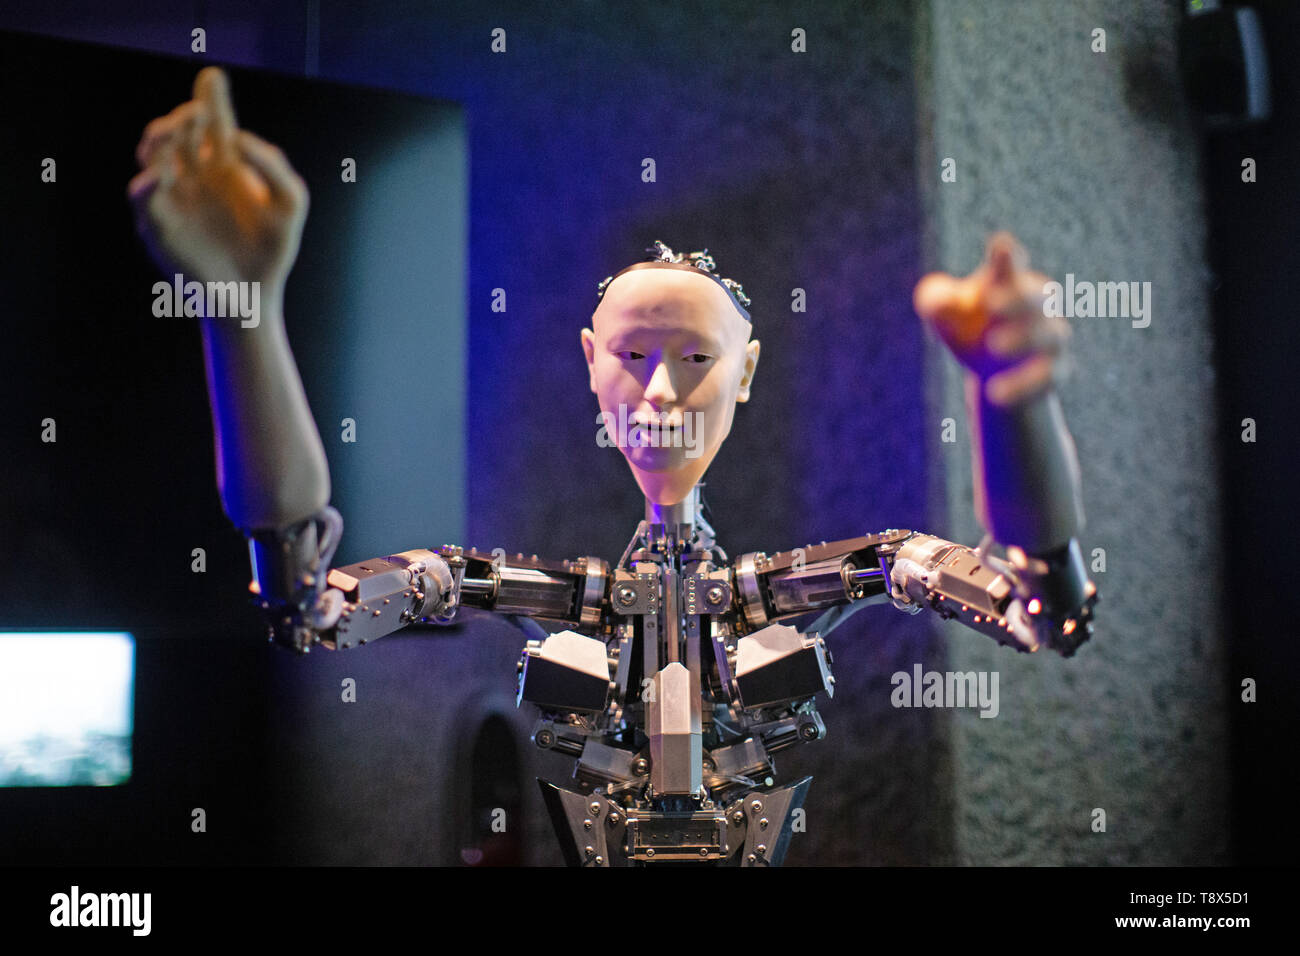 Roboticist Hiroshi Ishiguro 'Alter', un corpo macchina con un essere umano come il viso e le mani che impara attraverso interplaying, sul display al 'AI: più di umani' mostra presso il Barbican Centre di Londra. La nuova importante esposizione analizza il rapporto tra gli esseri umani e di intelligenza artificiale. Foto Stock